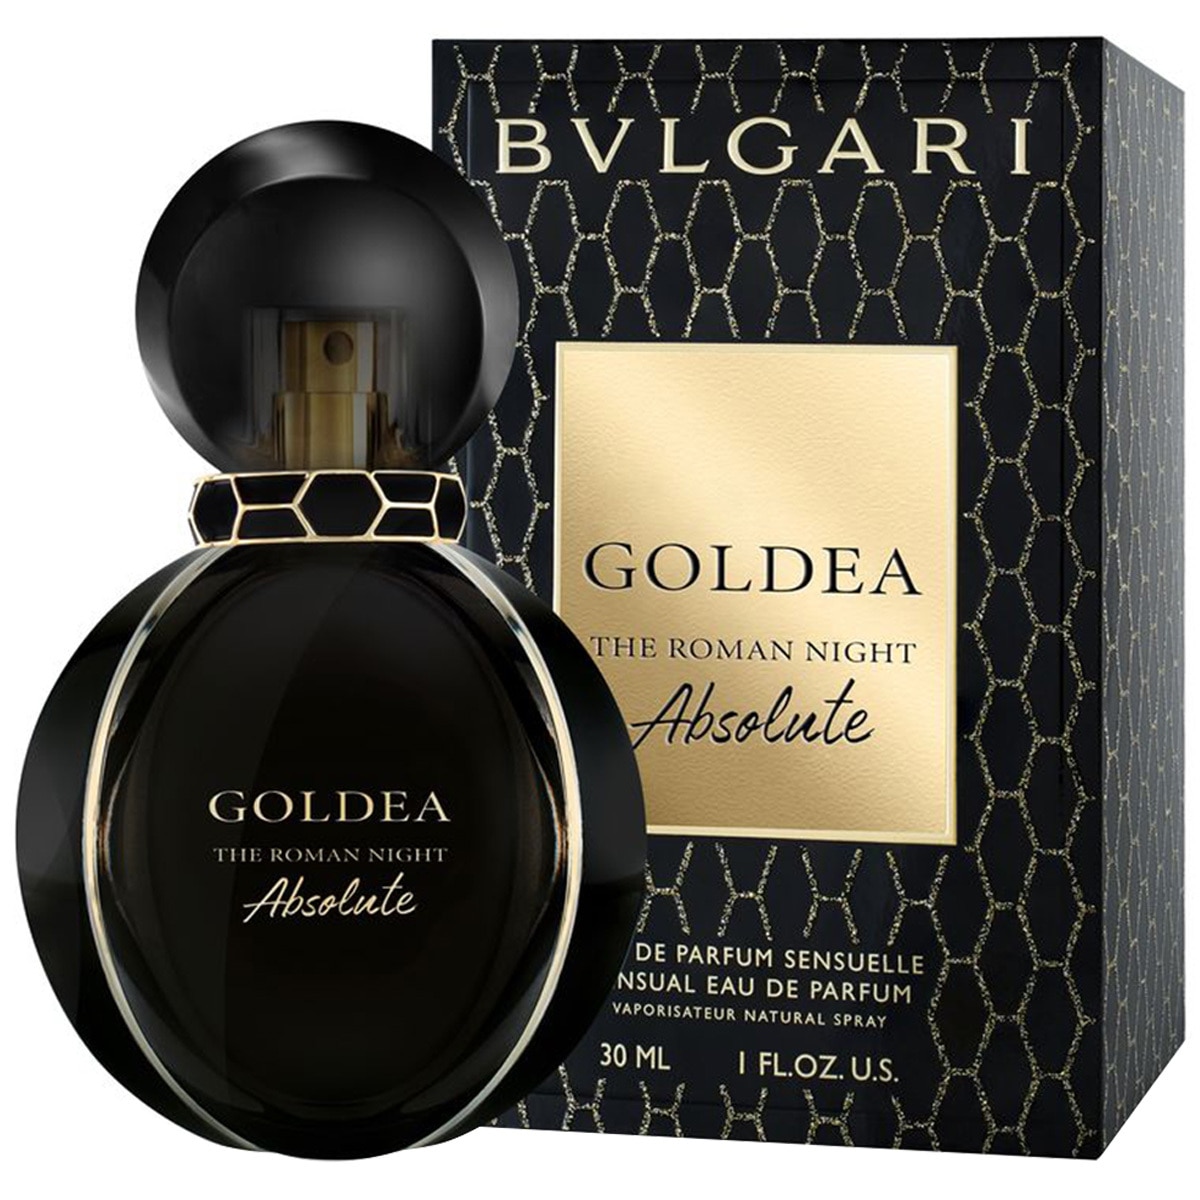 bvlgari parfum goldea